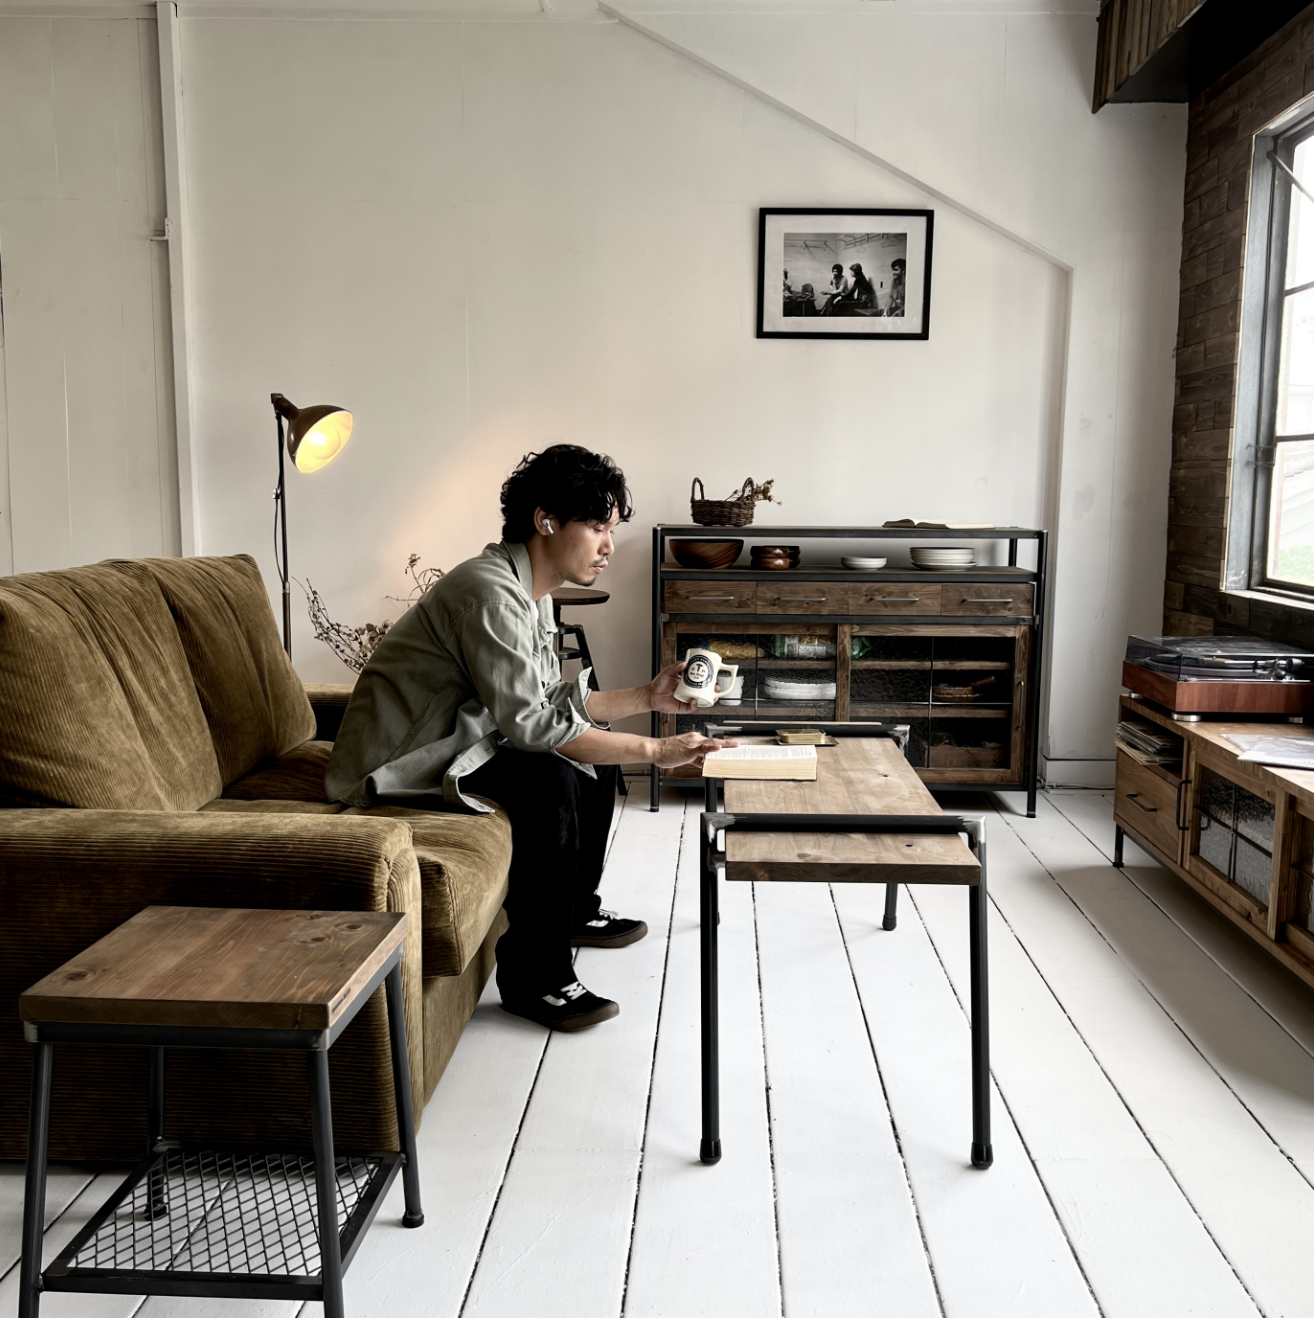 大阪のおしゃれな家具屋 オーダー家具・アイアン家具ならINDUSTRIAL BRANCH大阪のおしゃれな家具屋 